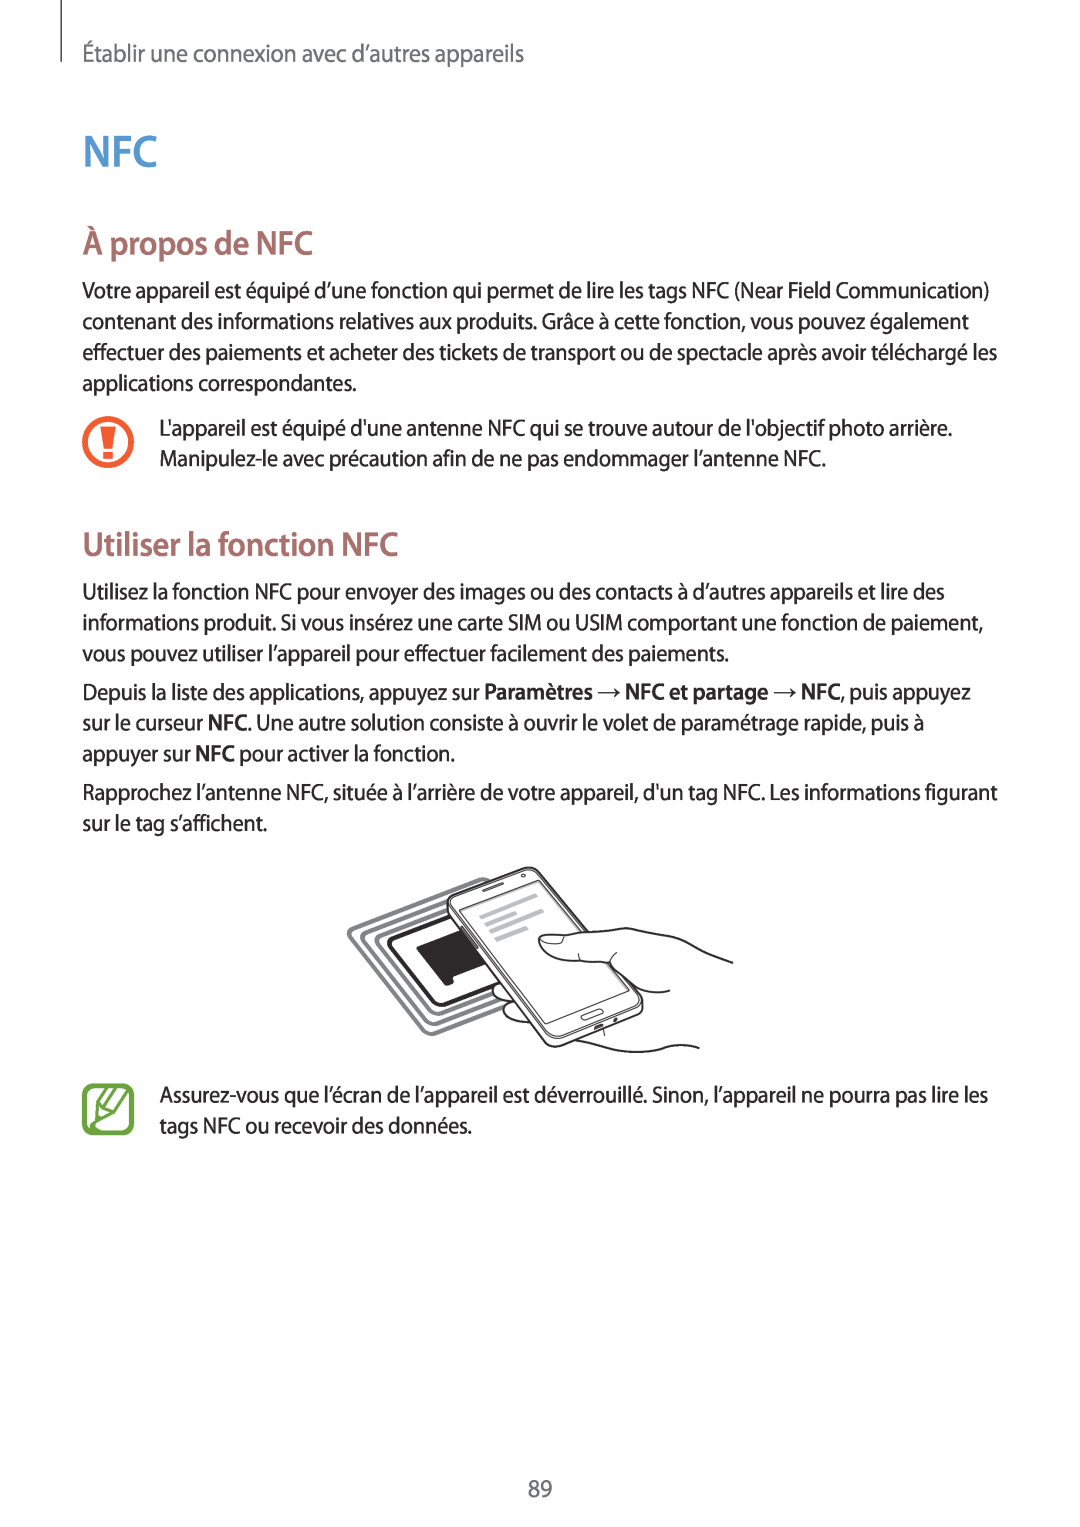 Samsung SM-A300FZKUFTM manual À propos de NFC, Utiliser la fonction NFC, Établir une connexion avec d’autres appareils 